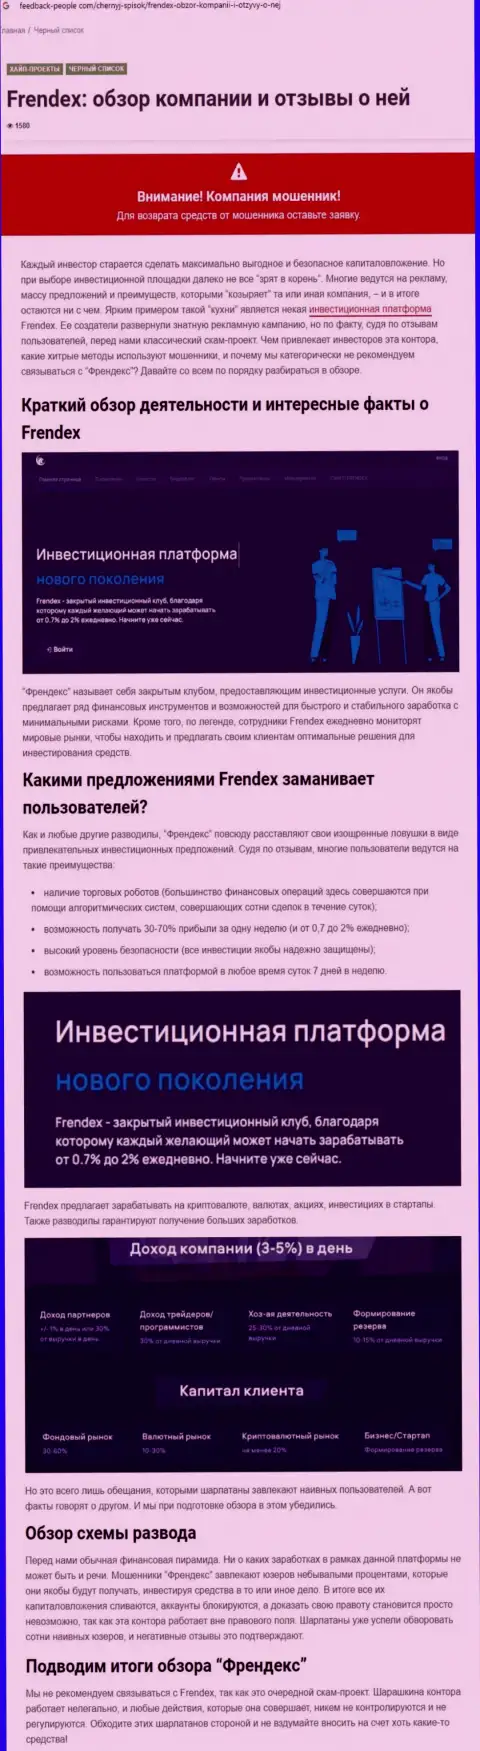 Детальный обзор мошеннических деяний Френдекс Европа ОЮ и отзывы клиентов организации